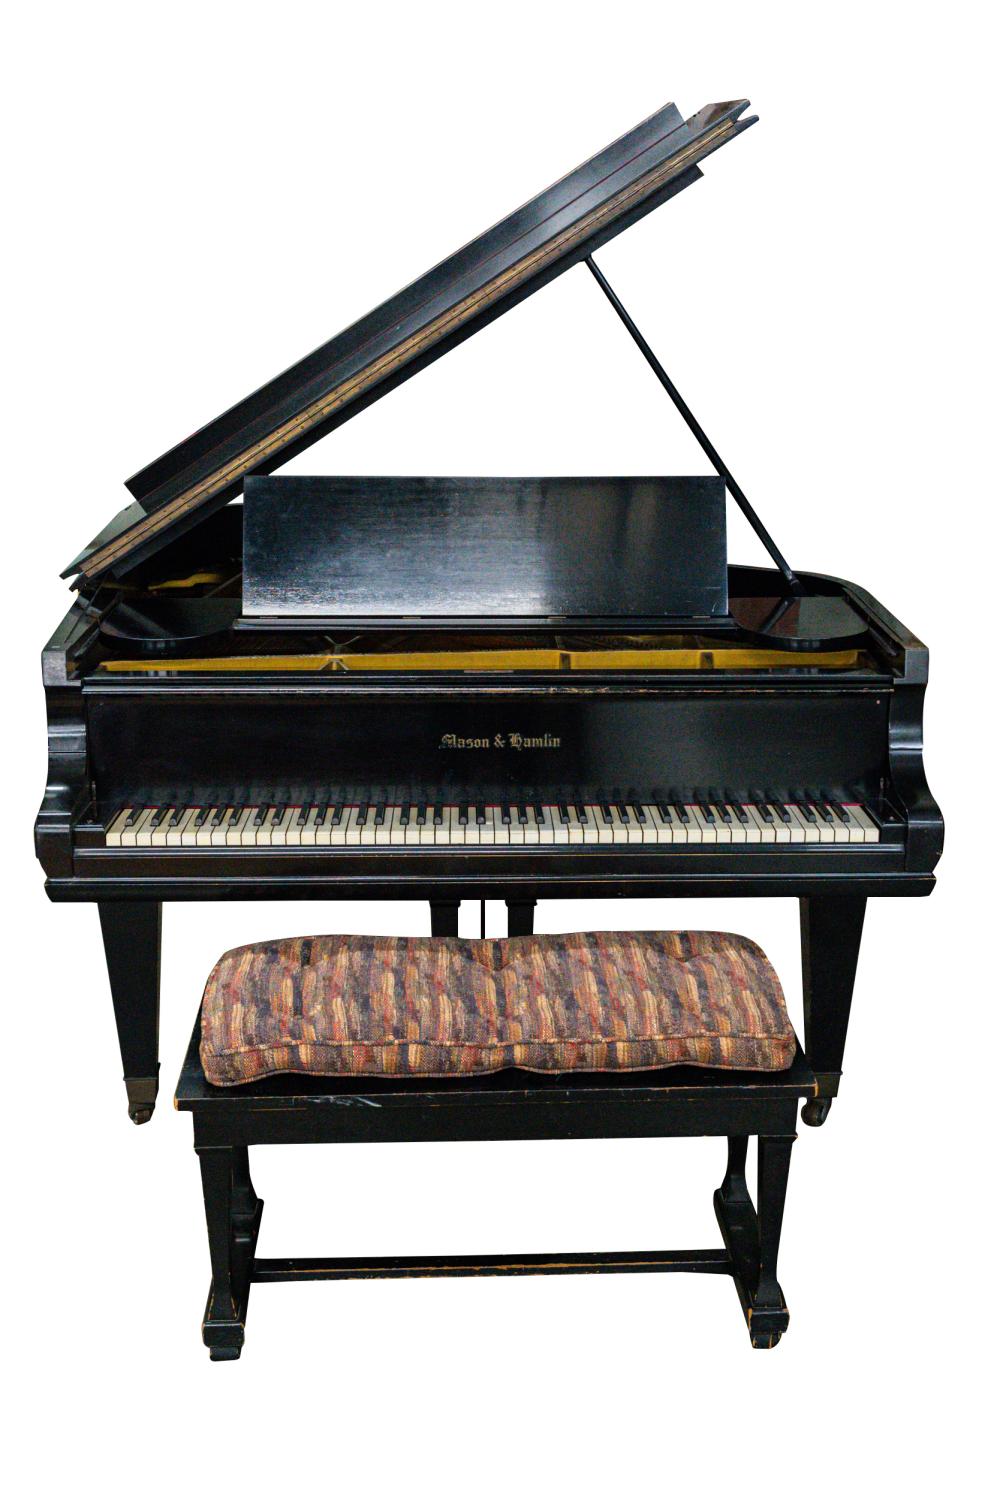 MASON & HAMLIN EBONIZED GRAND PIANOserial